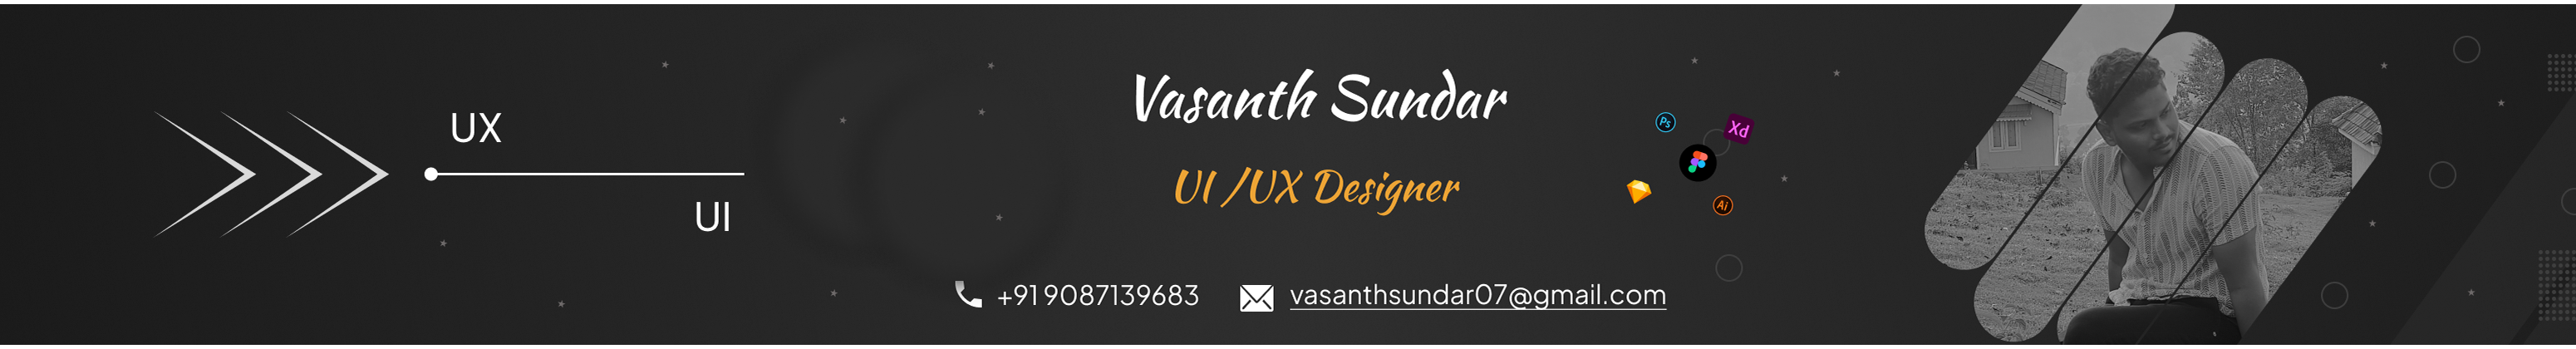 Vasanth Sundar's profile banner